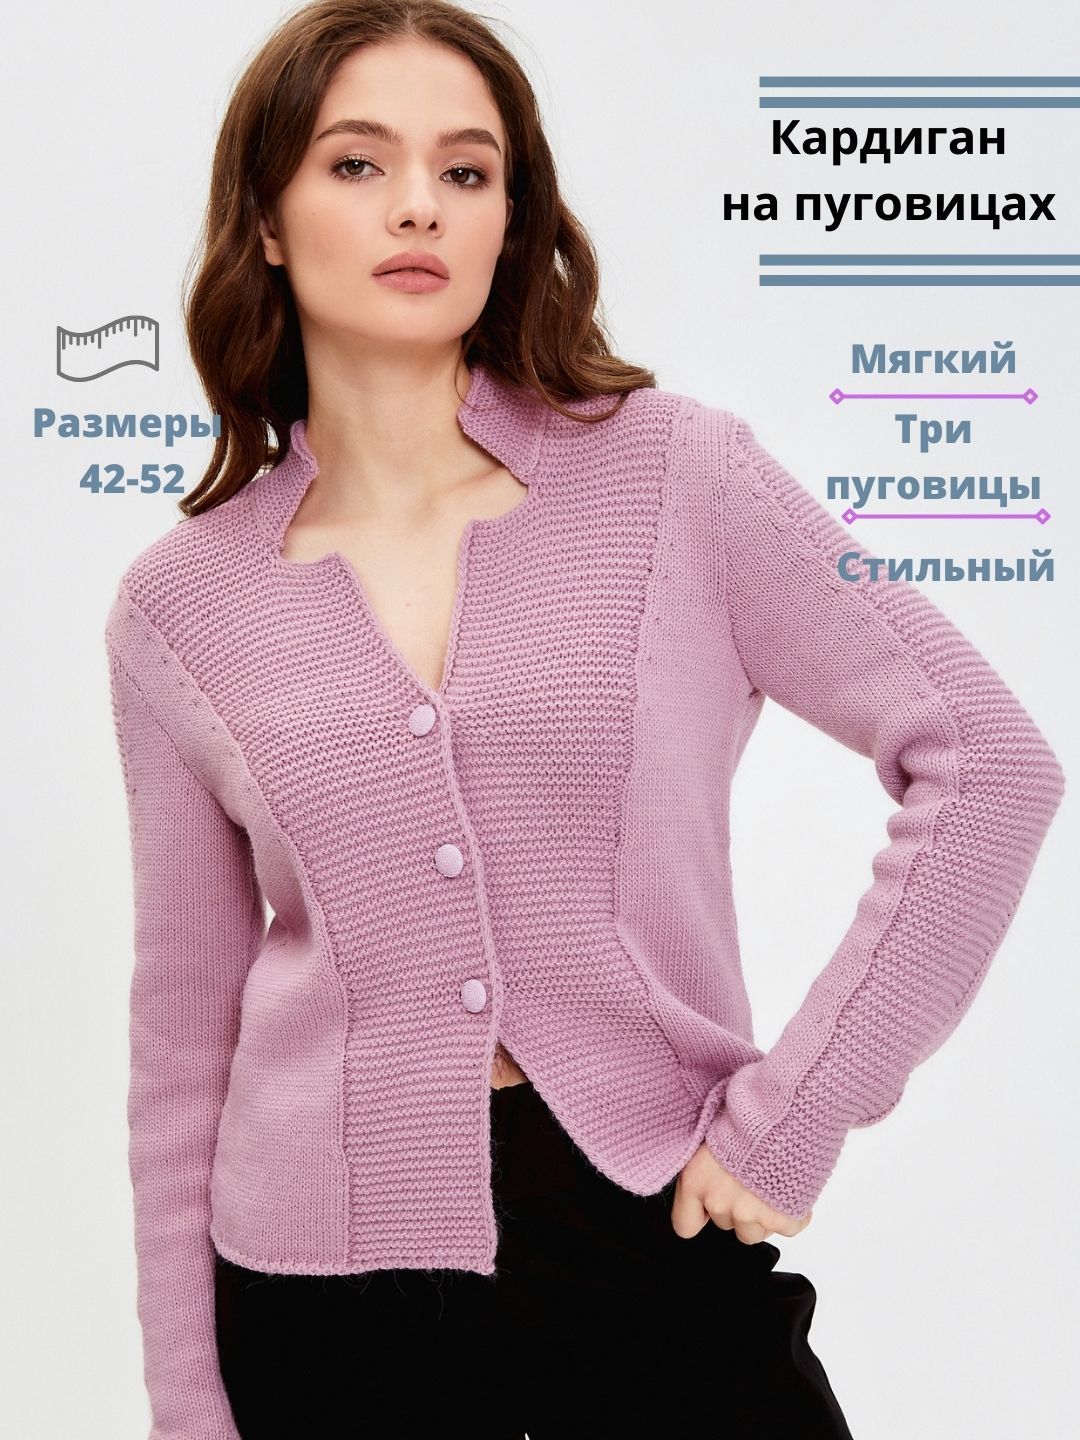 Италия - купить по лучшей цене в каталоге интернет-магазине одежды garant-artem.ru